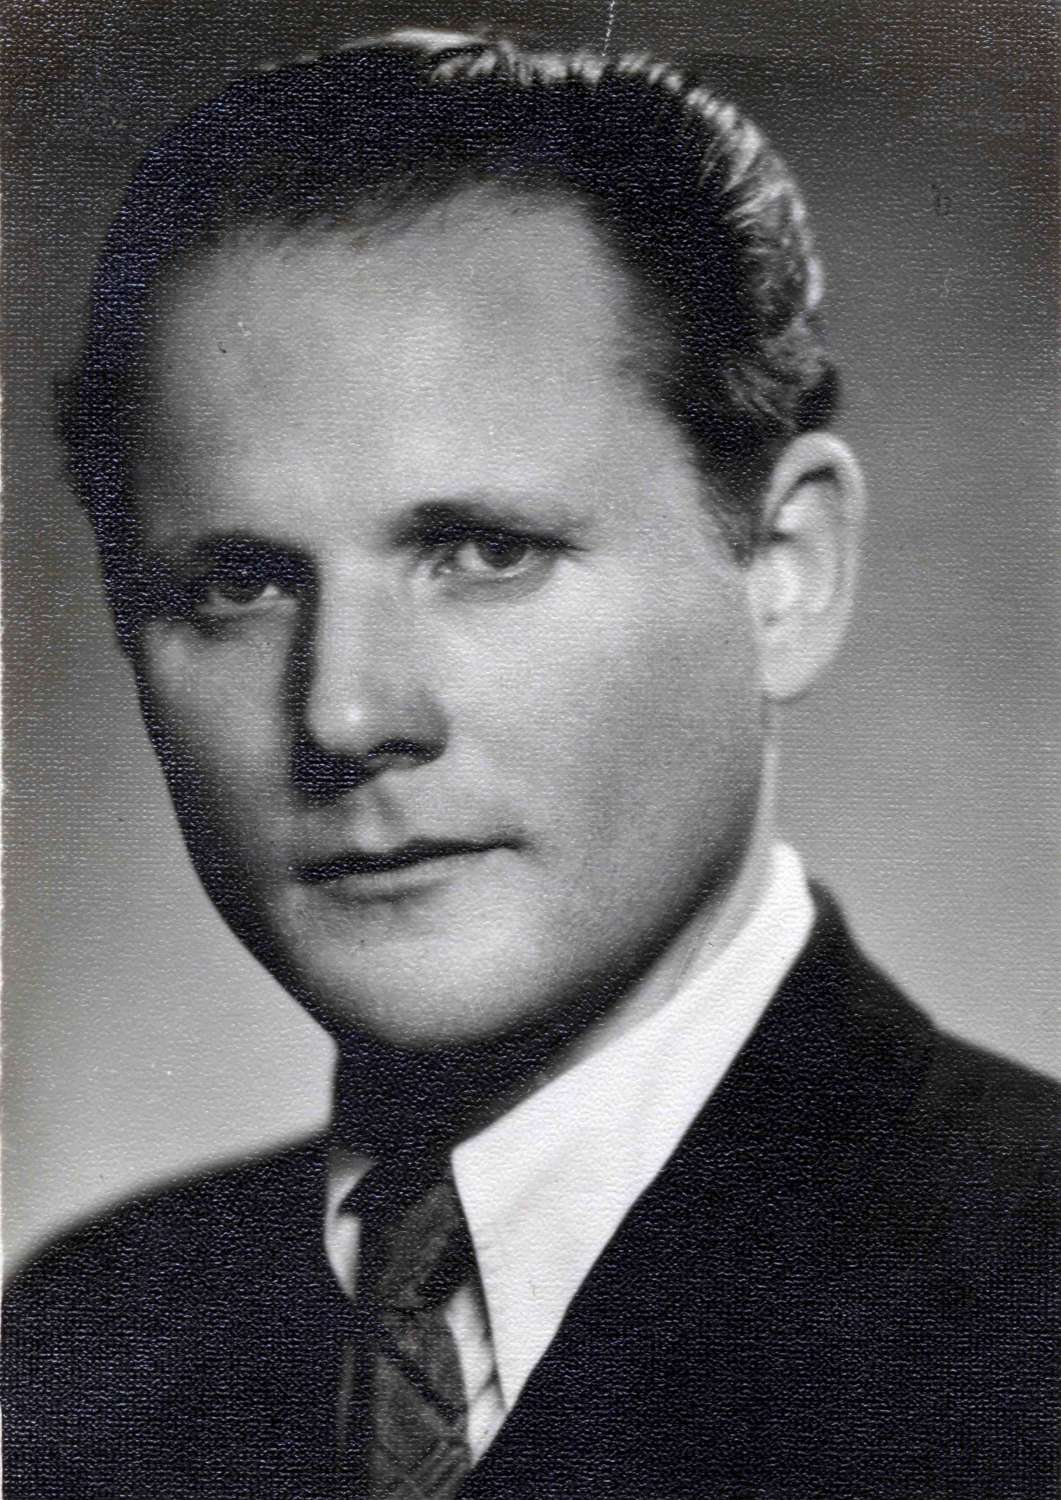 Statkevičius iš lagerio grįžęs į Lietuvą. Vilnius. 1957 m. | Okupacijų ir laisvės kovų muziejaus rinkinių nuotr.